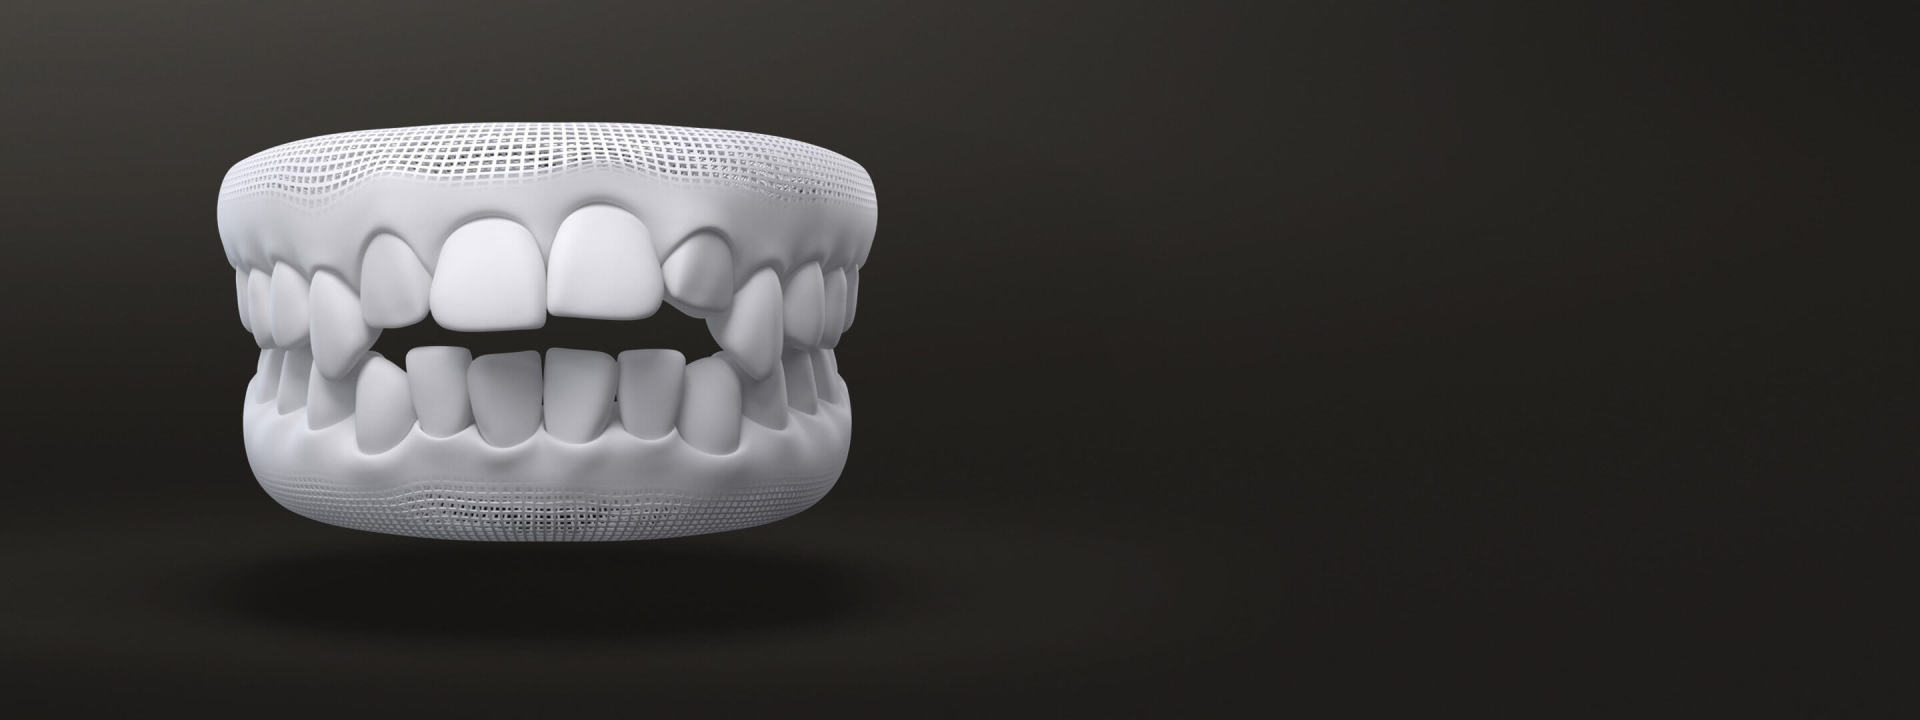 Morso aperto modello 3D: casi trattabili con allineatori dentali Invisalign Italia